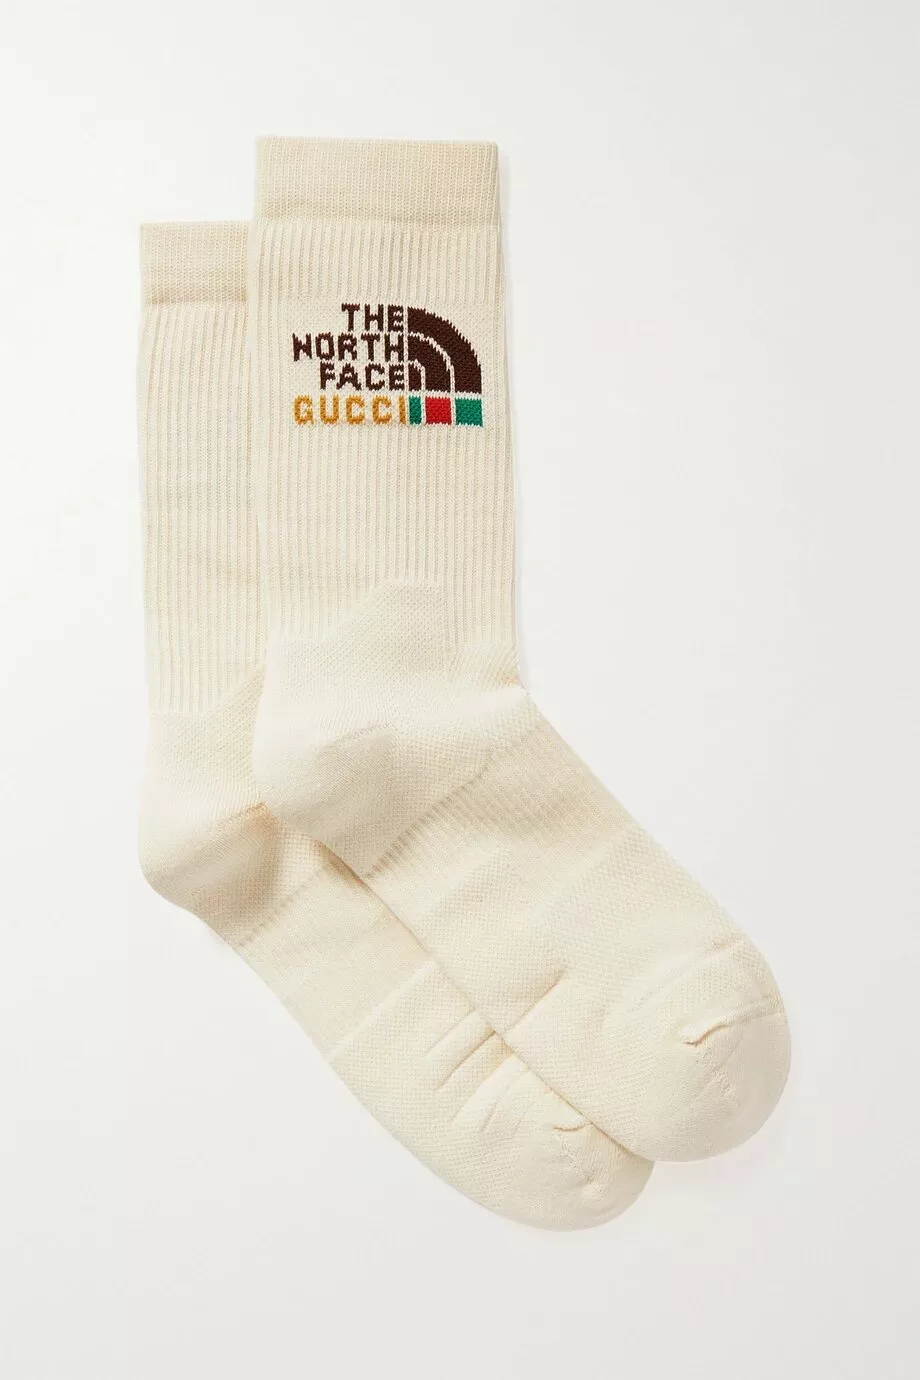 Шкарпетки Gucci, створені в колаборації з The North Face